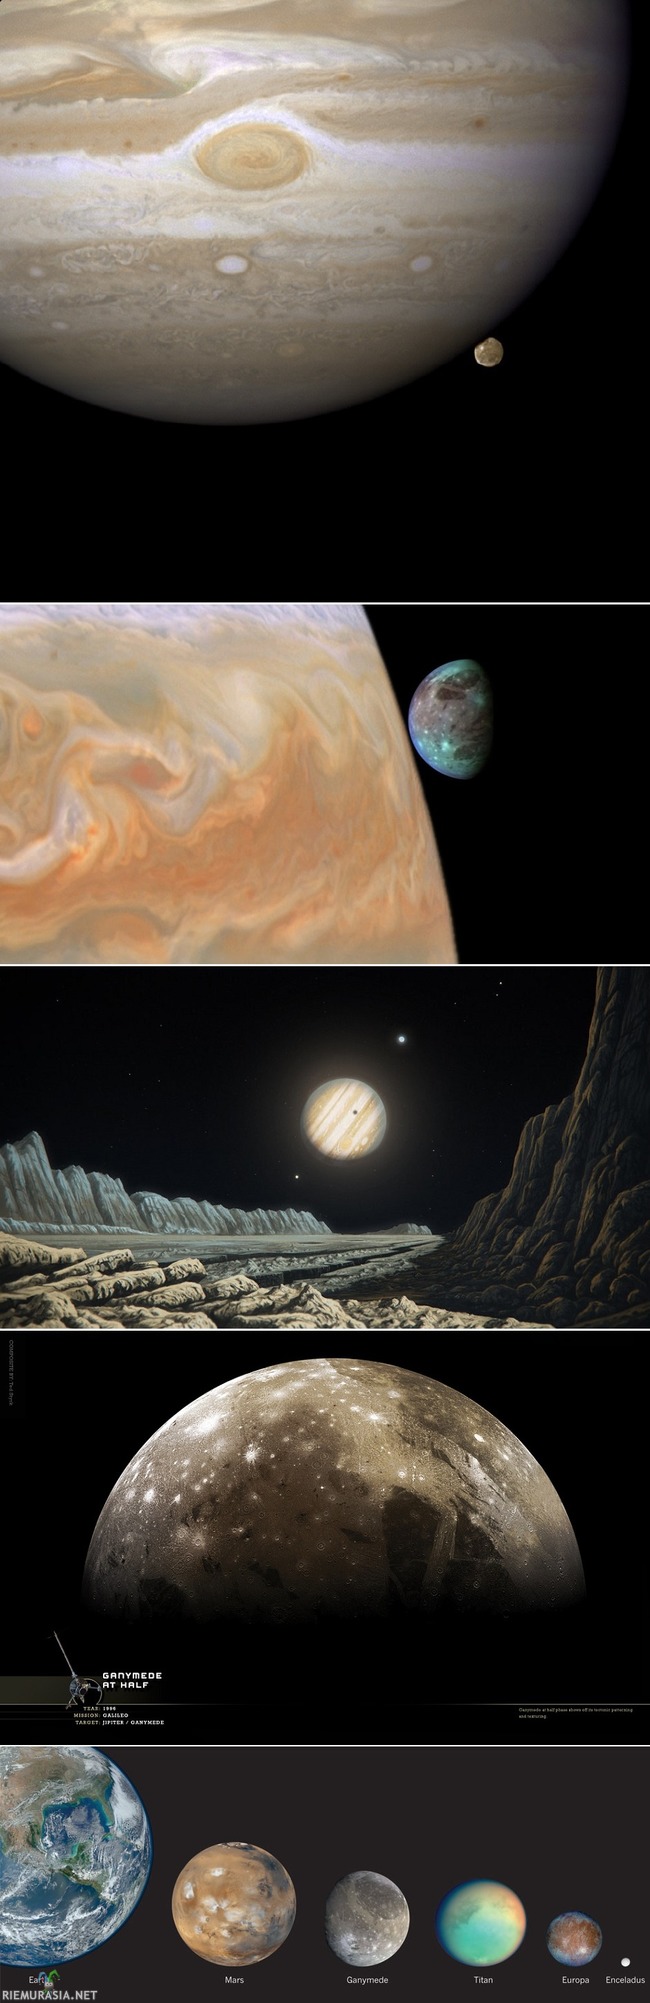 Ganymede  - keskimmäinen kuva, taiteilijan tekemä kuva Ganymedestä luotain kuvien perusteella. Yksi päivä kestää viikon Ganymedella. 

Moni tuntee tai on kuullut Aurinkokunnan kuista kuten: Titan, Europa, Charon, kuu, tai Miranda, mutta mikään edellisistä ei ole suurin kuu. Aurinkokunnan suurin kuu on nimittäin vähän tuntemattomampi Ganymede, joka on myös samalla Jupiter-planeetan suurin kuu. Se on suurempi kuin Merkurius-planeetta ja vain vähän pienempi kuin Mars-planeetta.

Jos jupiteria voi verrata suuren kaupungin keskus-aukioon, Ganymede on korttelin suurin rakennus. Ganymede on nimetty Olymposvuorten jumalten juomanlakijan mukaan. Sillä on kivinen ydin, jäinen vaippa ja kivistä vesijäätä oleva kuori. Sen geologista historiaa pidetään rikkaana. Tätä nykyään sen maisema koostuu korkeista ja jyrkistä vuorista, laaksoista, kraattereista ja laavavirroista. Vaaleat alueet pinnalla ovat vesijäätä. Niiden harjut ja uurteet muodostavat monimutkaisen verkoston, jonka rakenteiden koko vaihtelee sadoista km tuhansiin kilometreihin. Ganymeden pinnalta on löydetty vähän otsonia jonka perusteella ollaan päätelty, että siellä voisi olla harva happi kaasukehä kuten sen sisar satellitilla Europalla. 